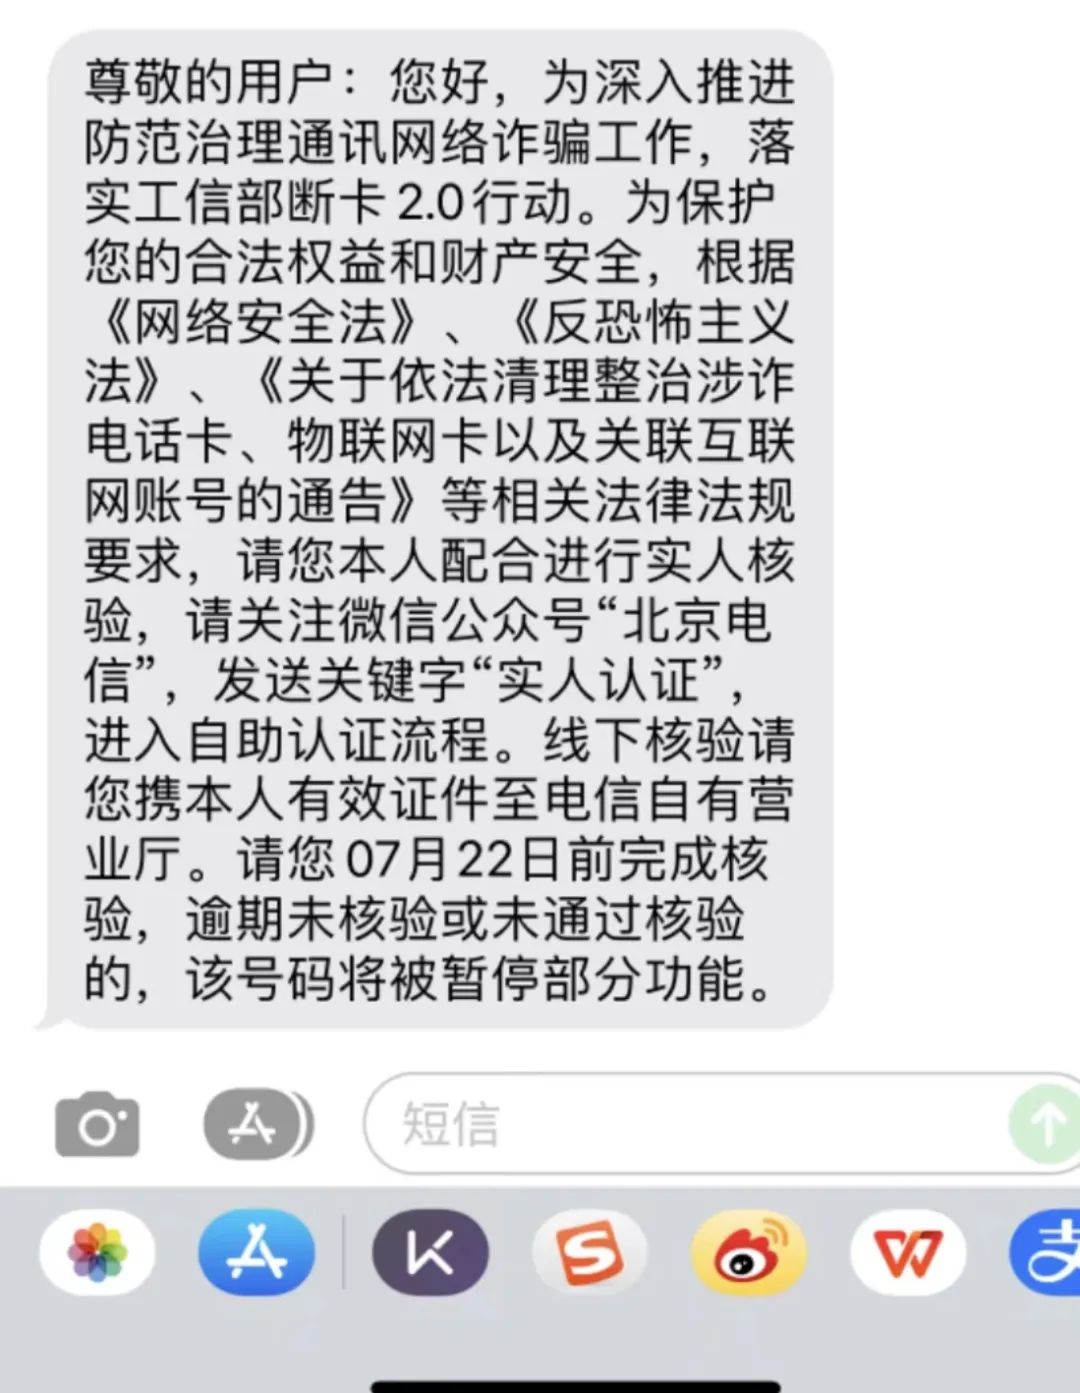 近期北京移动电信手机卡“大规模封号”暂停服务，普通消费者该如何维护自己的权益？插图